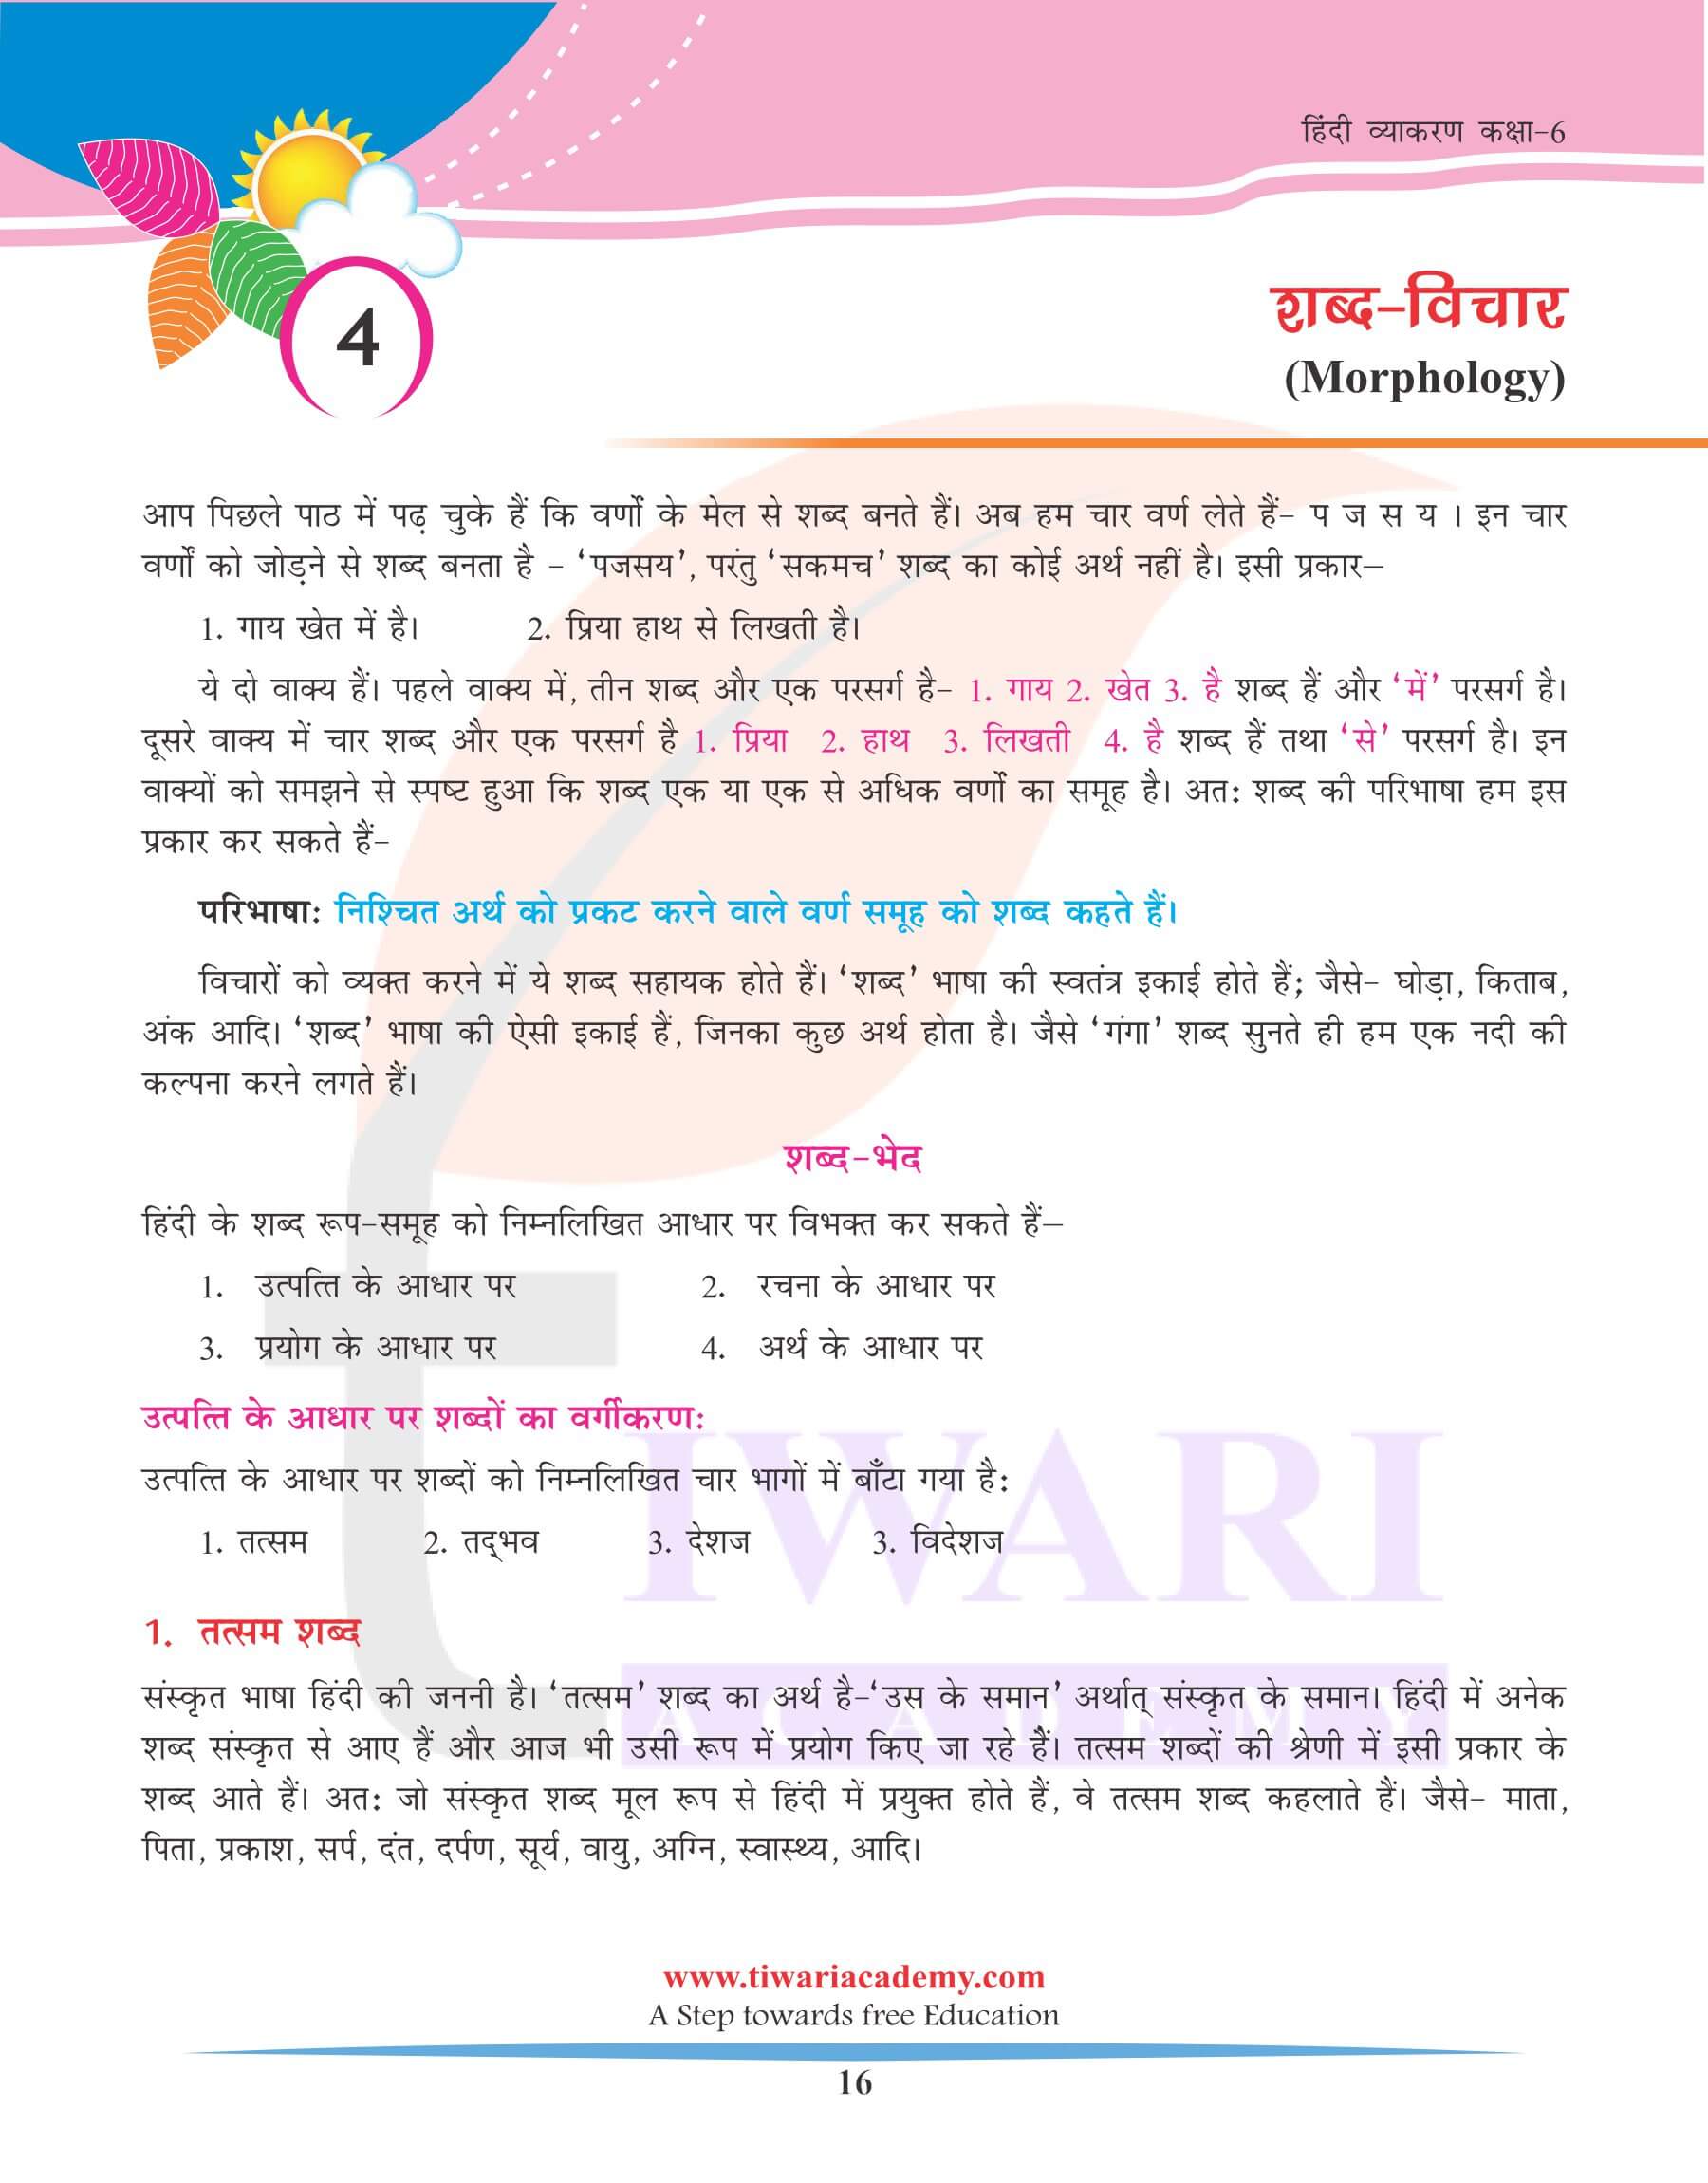 कक्षा 6 हिंदी व्याकरण अध्याय 4 शब्द-विचार के उदाहरण